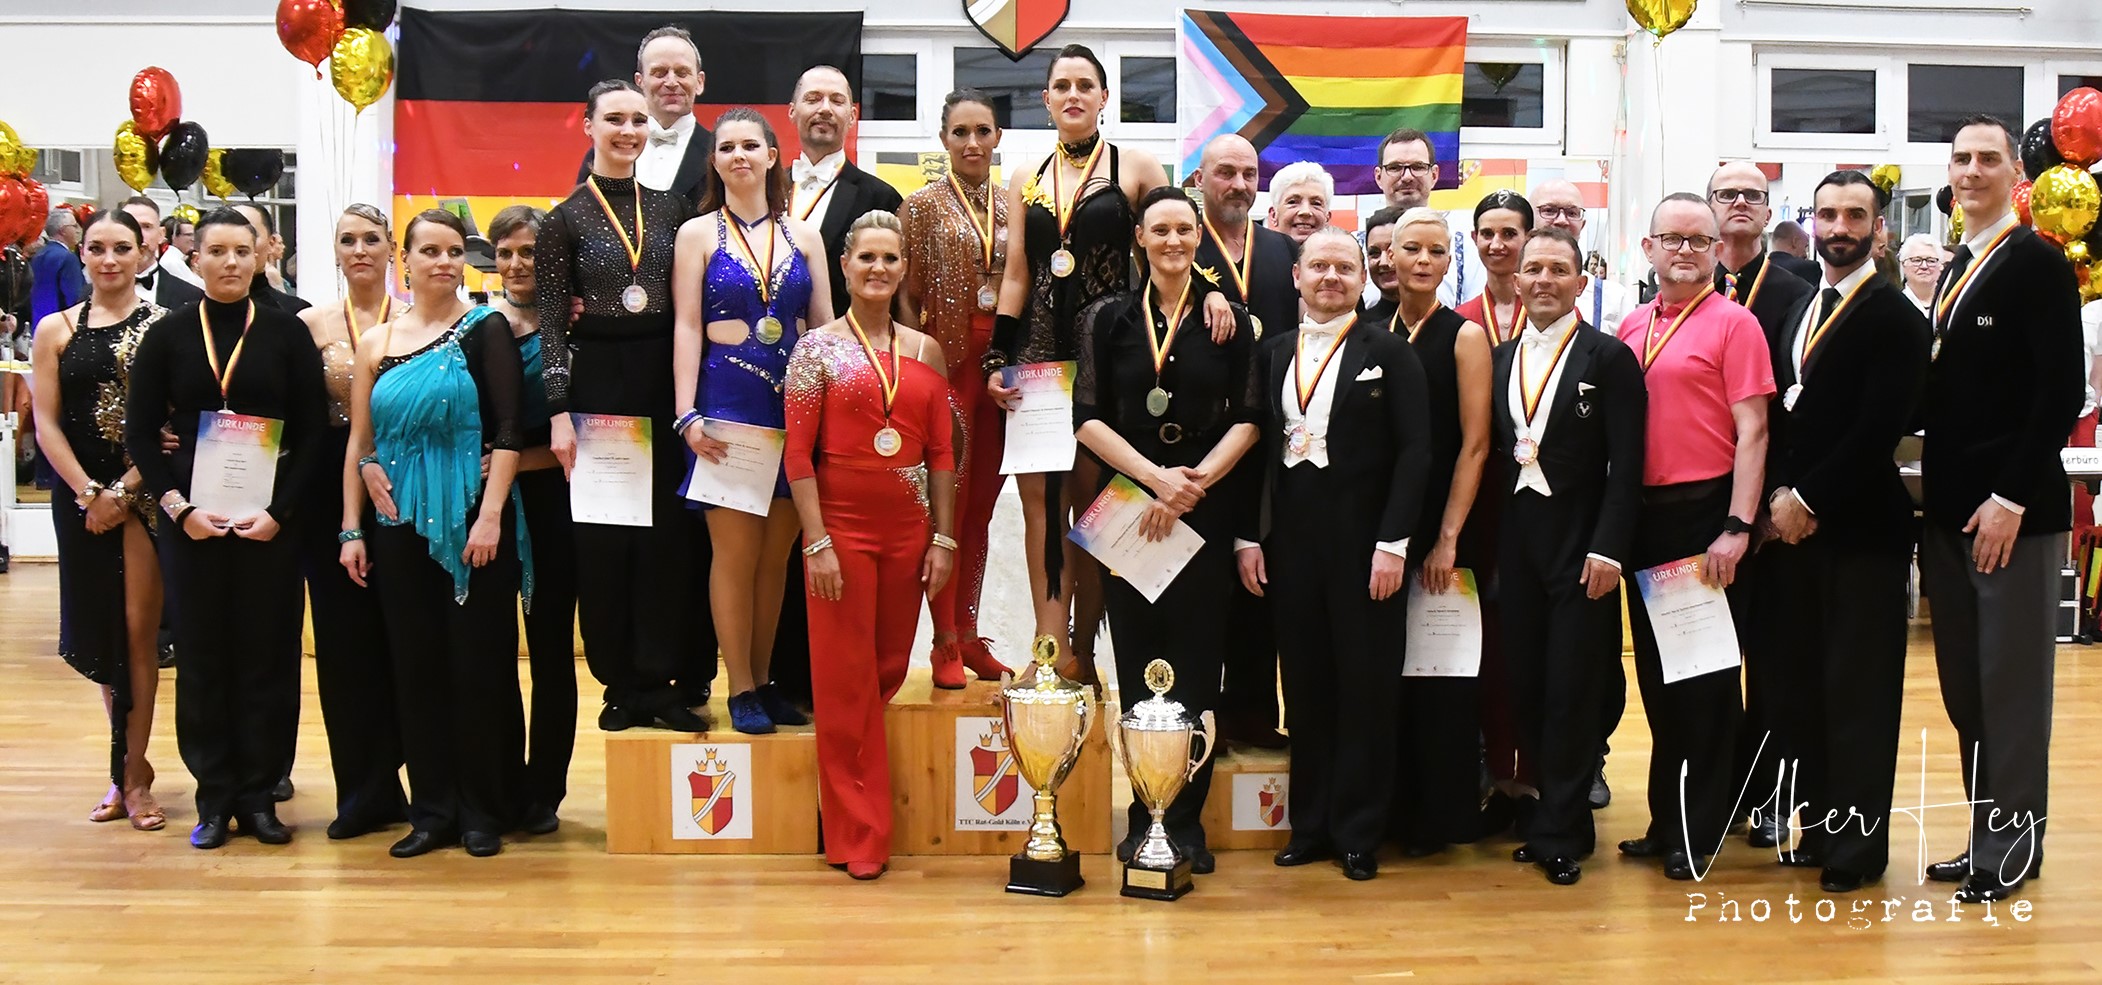 Die 19. Internationale Offene Deutsche Meisterschaften für Frauen- und Männerpaare in den Standard- und Lateinamerikanischen Tänzen